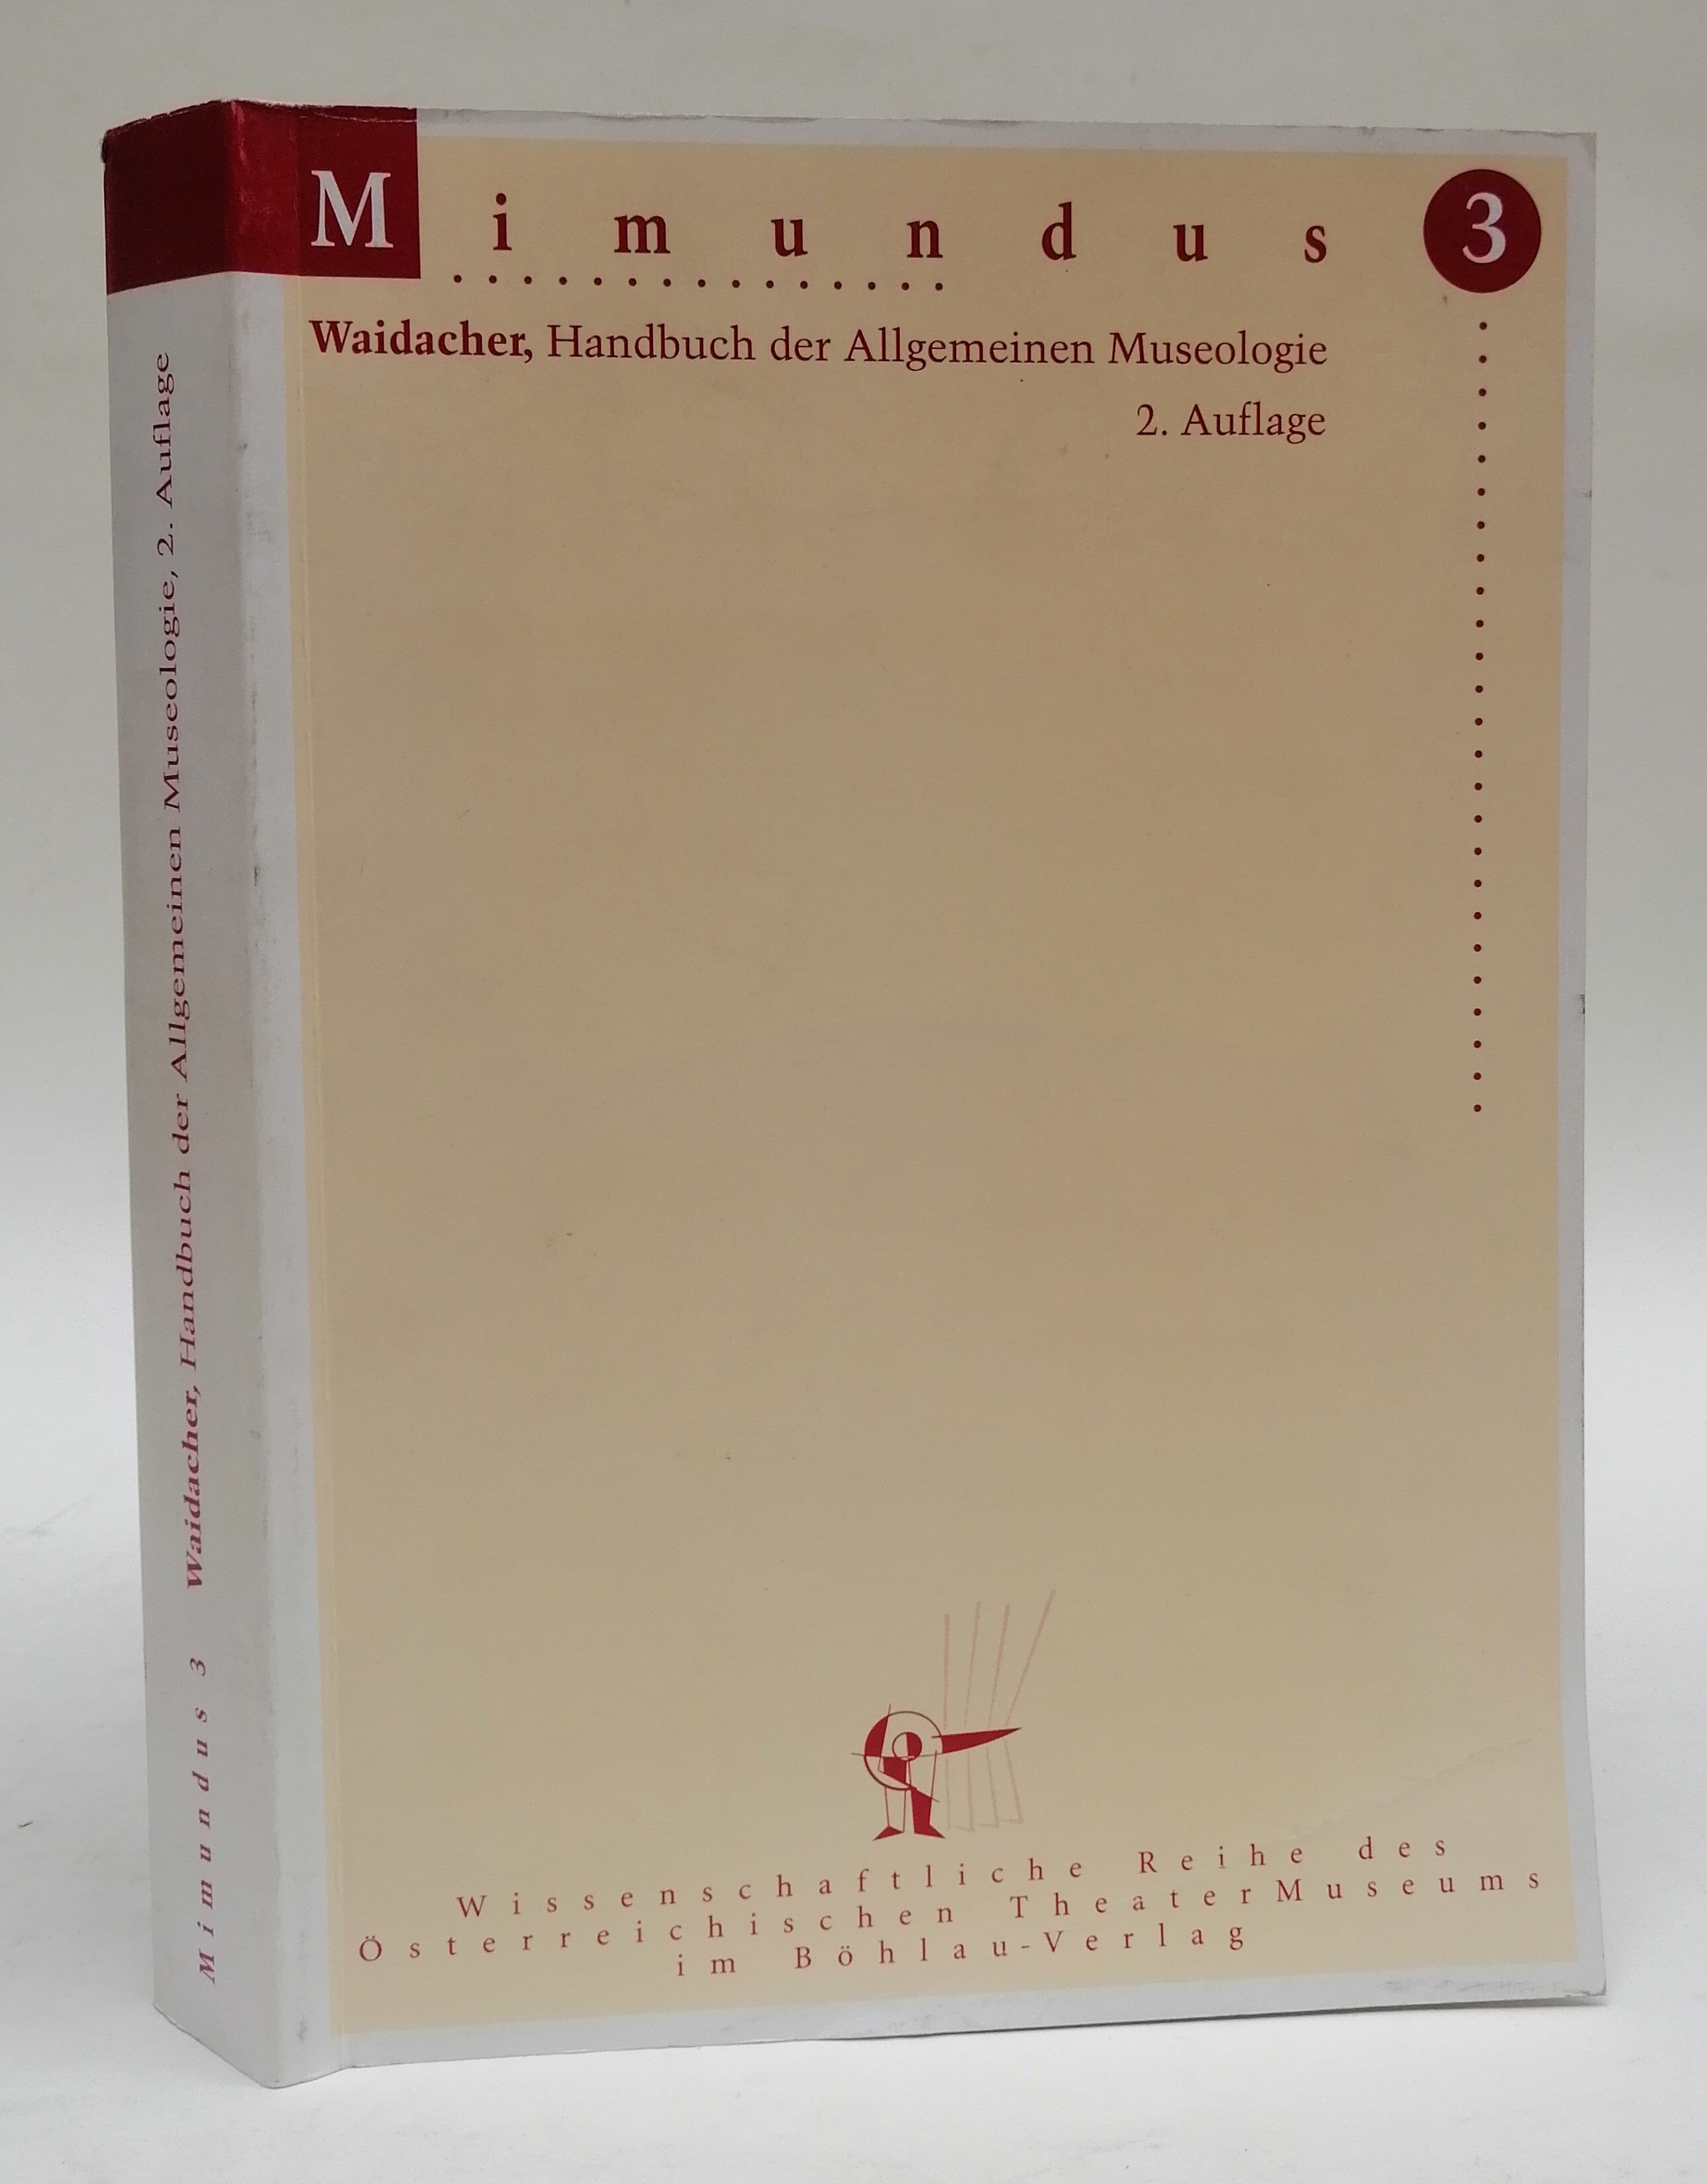 Handbuch der Allgemeinen Museologie (Mimundus: Wissenschaftliche Reihe des Österreichischen Theatermuseums)